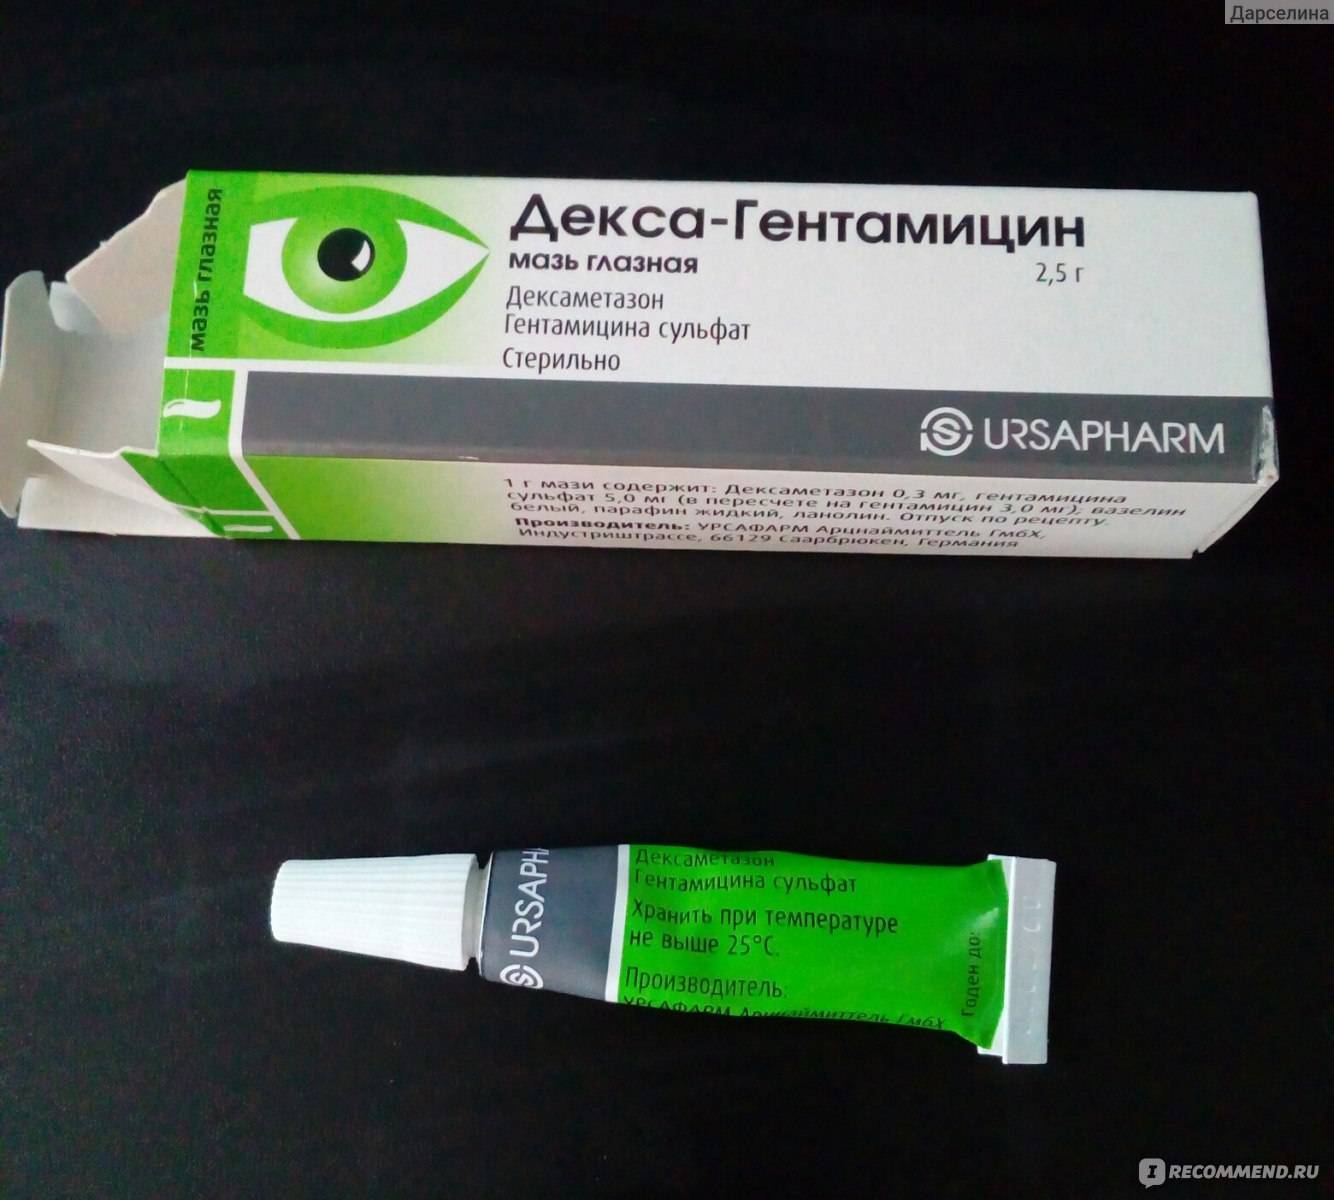 Декса-гентамицин мазь: 6 отзывов от реальных людей. все отзывы о препаратах на сайте - otabletkah.ru